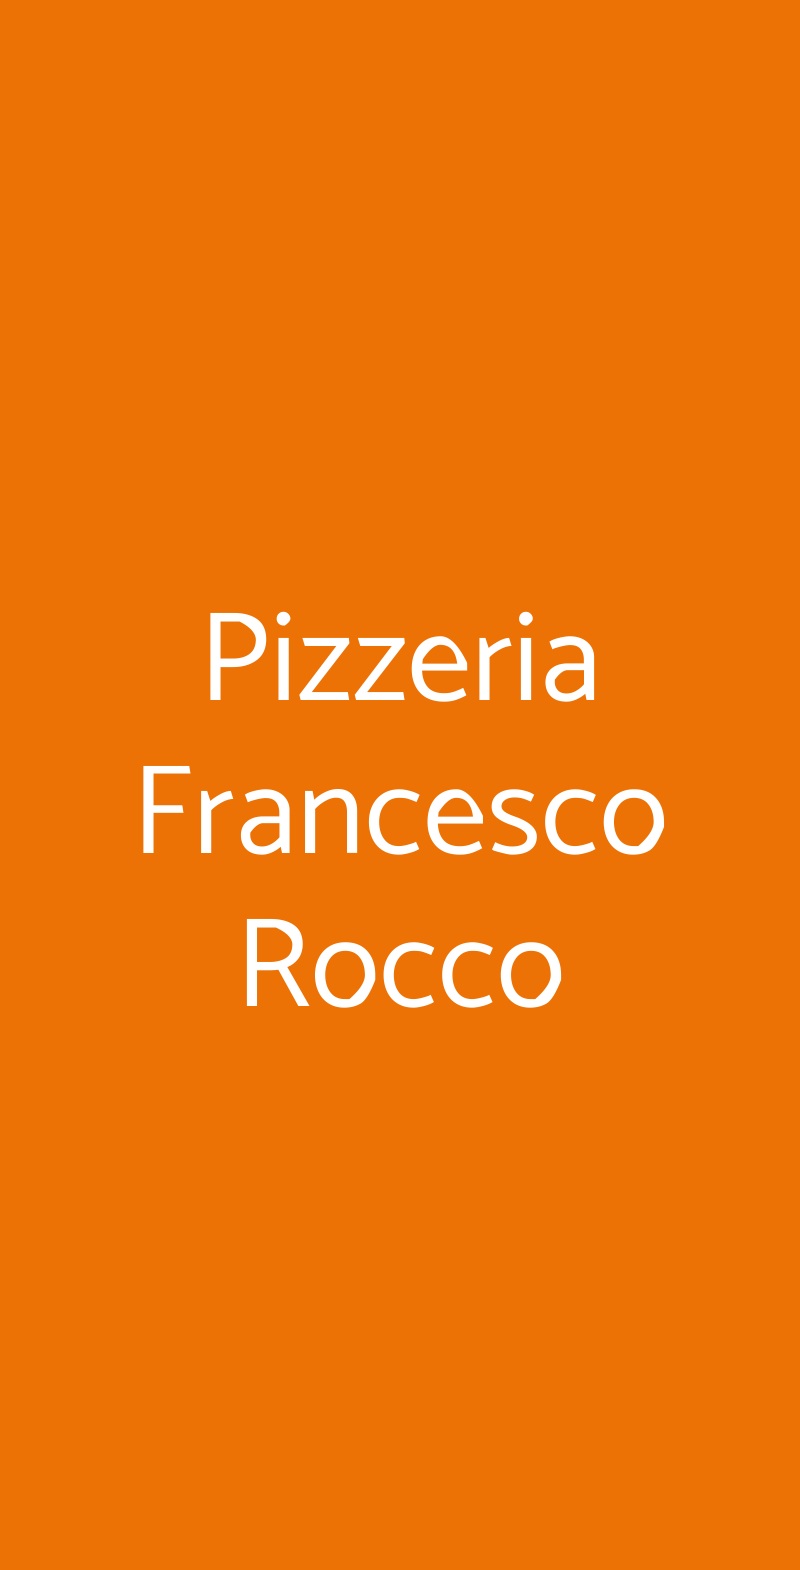 Pizzeria Francesco Rocco Casoria menù 1 pagina